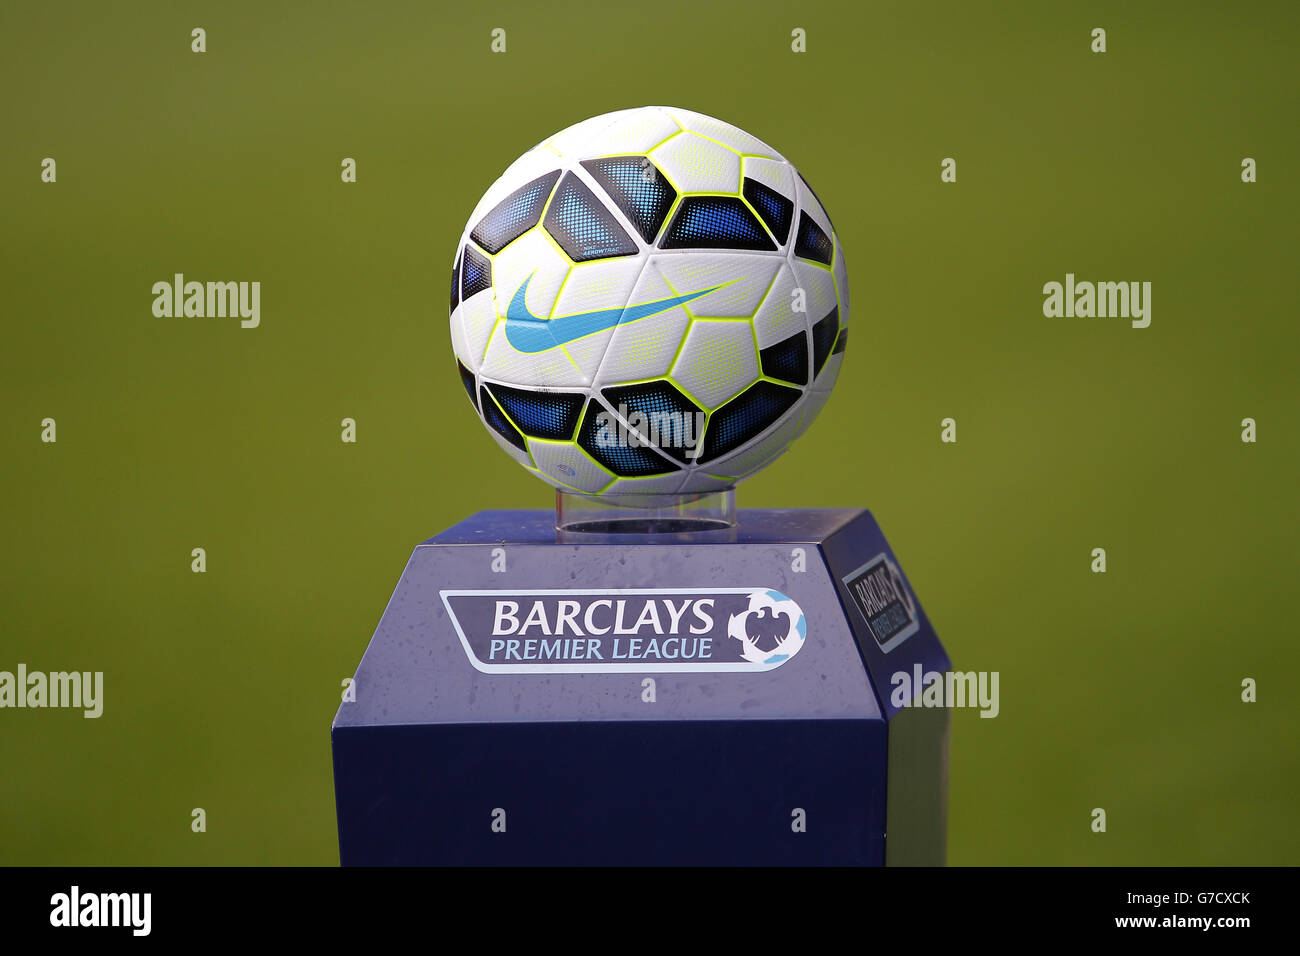 Detalle del balón oficial de la Barclays Premier League Fotografía de stock  - Alamy